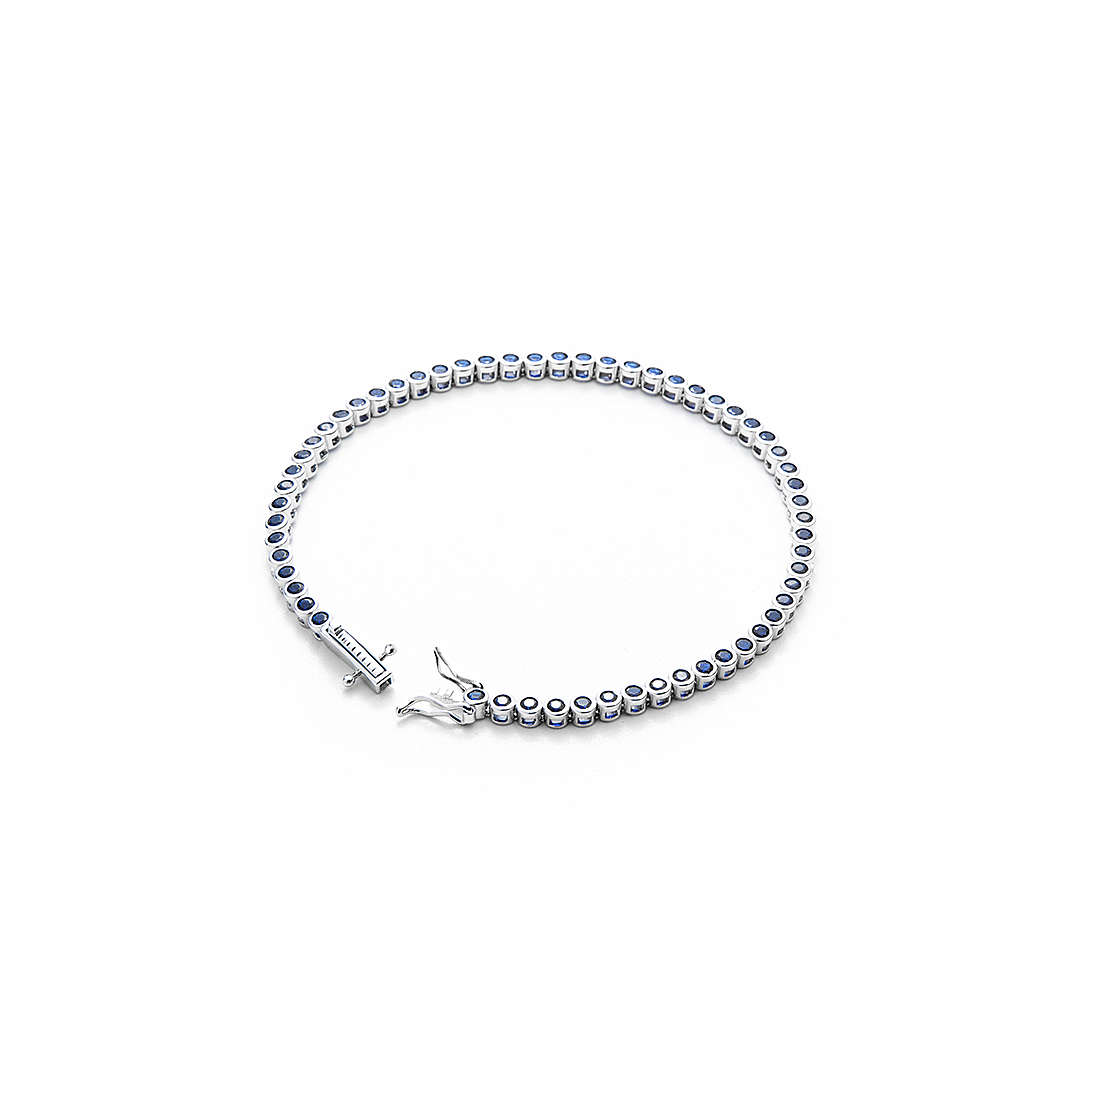 bracelet man jewellery Cesare Paciotti Loop JPBR2015B/19